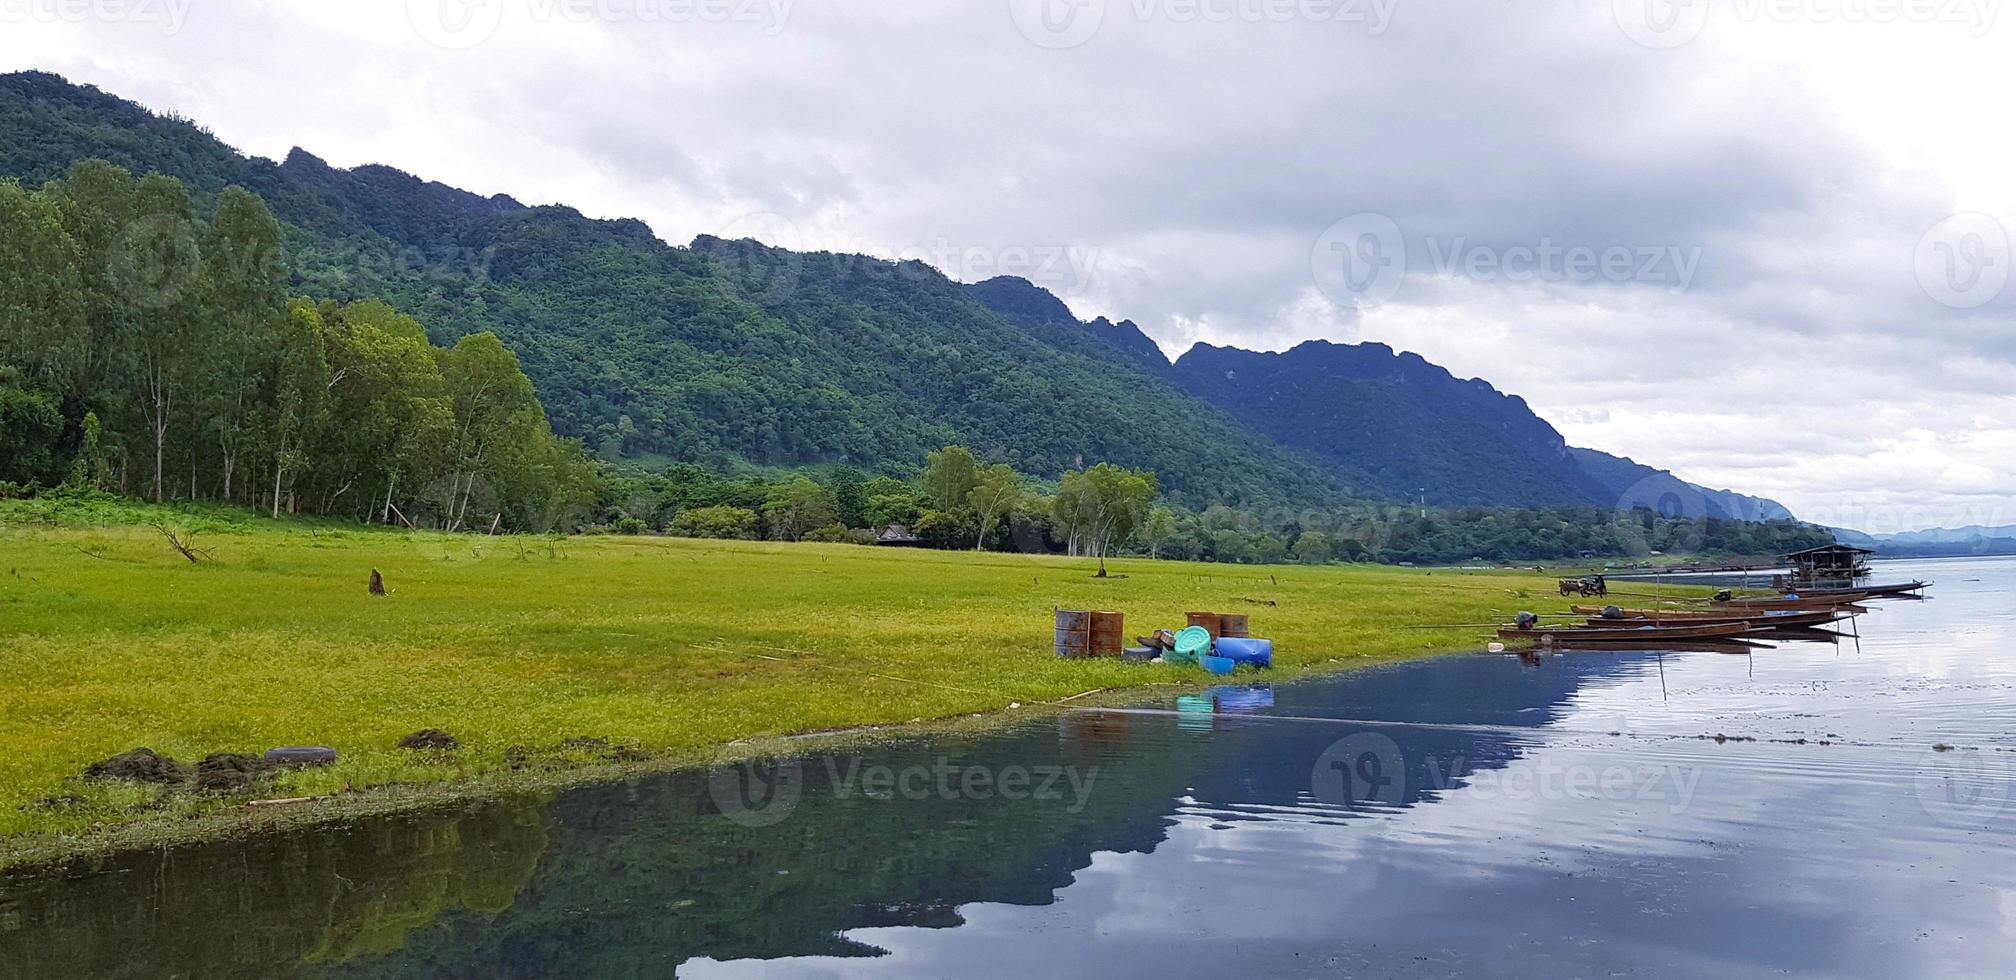 schön von Landschaft Sicht. lange Schwanz Boot geparkt oder schwebend auf das Wasser mit Grün Gras, Baum, groß Berg und Wolke Himmel Hintergrund beim Srinakarin See, Kanchanaburi, Thailand. Natur Hintergrund foto